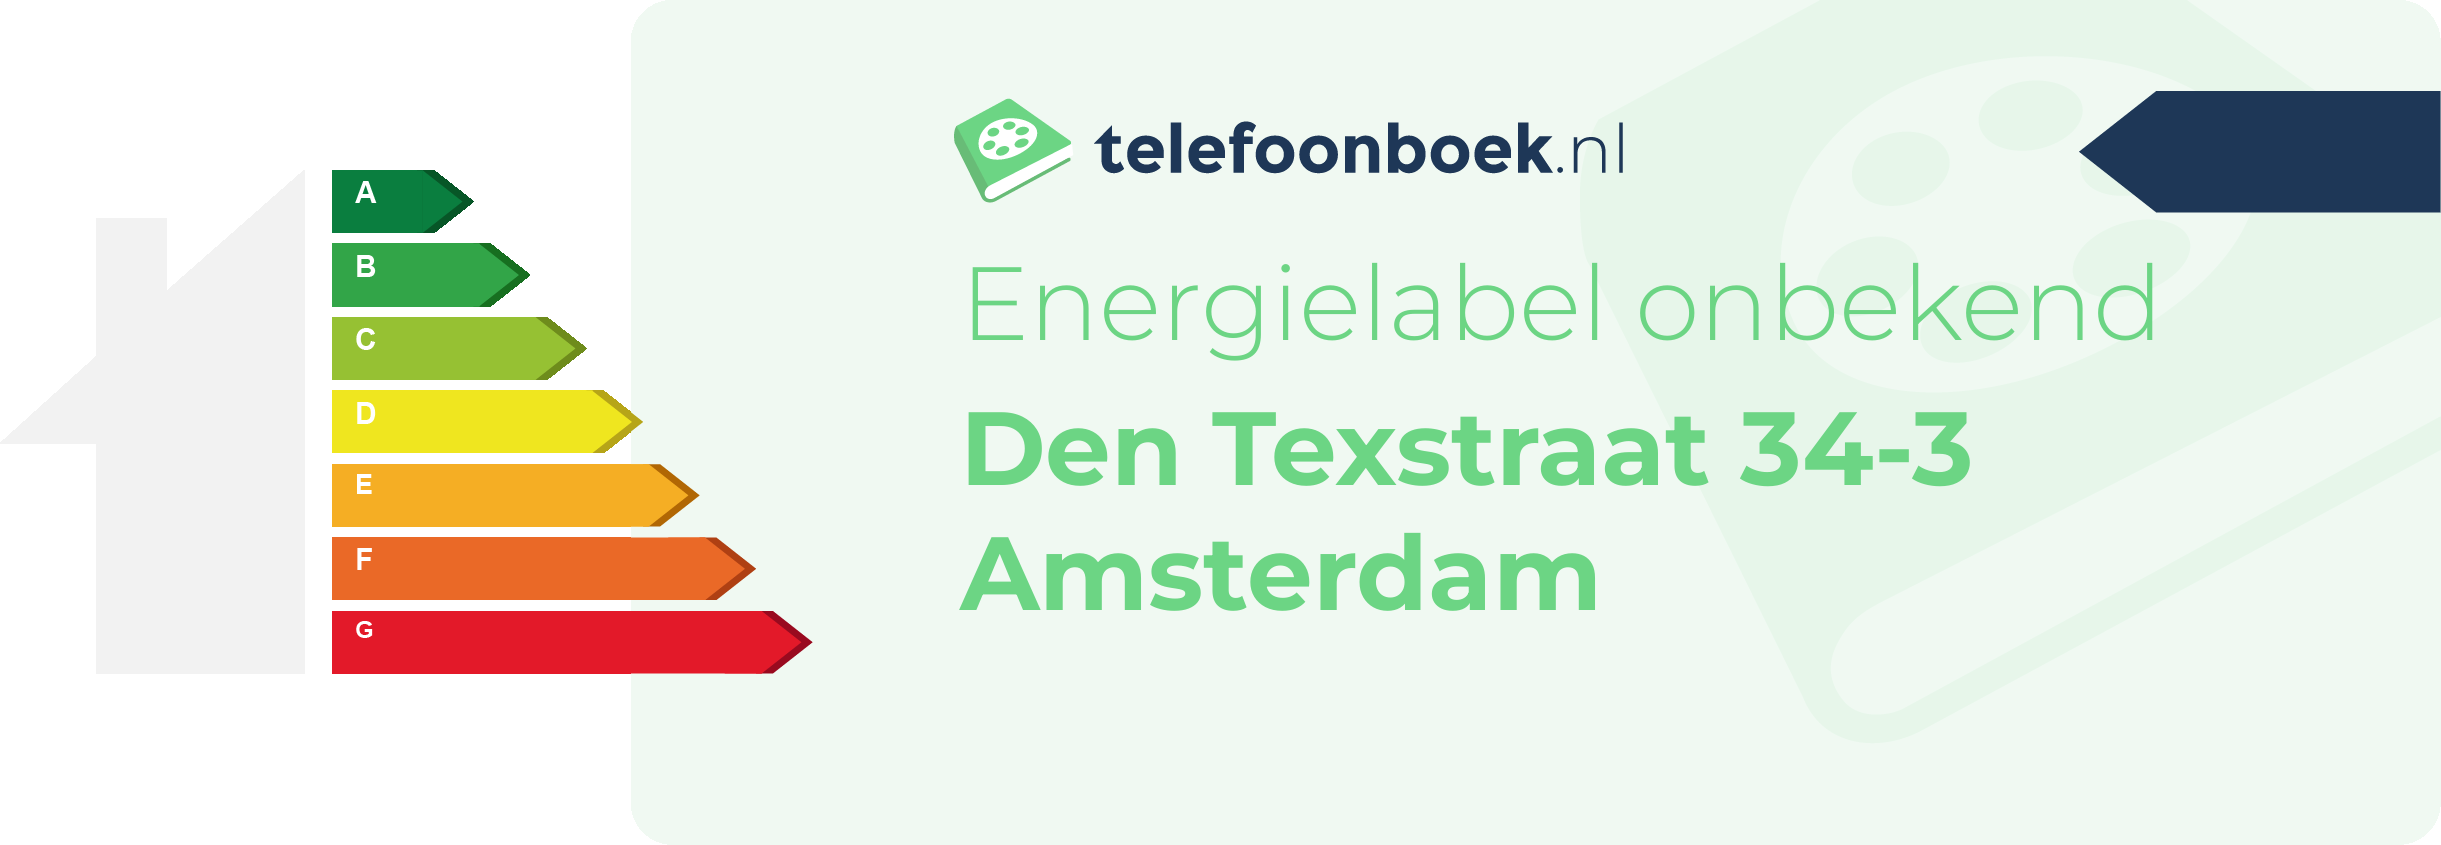 Energielabel Den Texstraat 34-3 Amsterdam